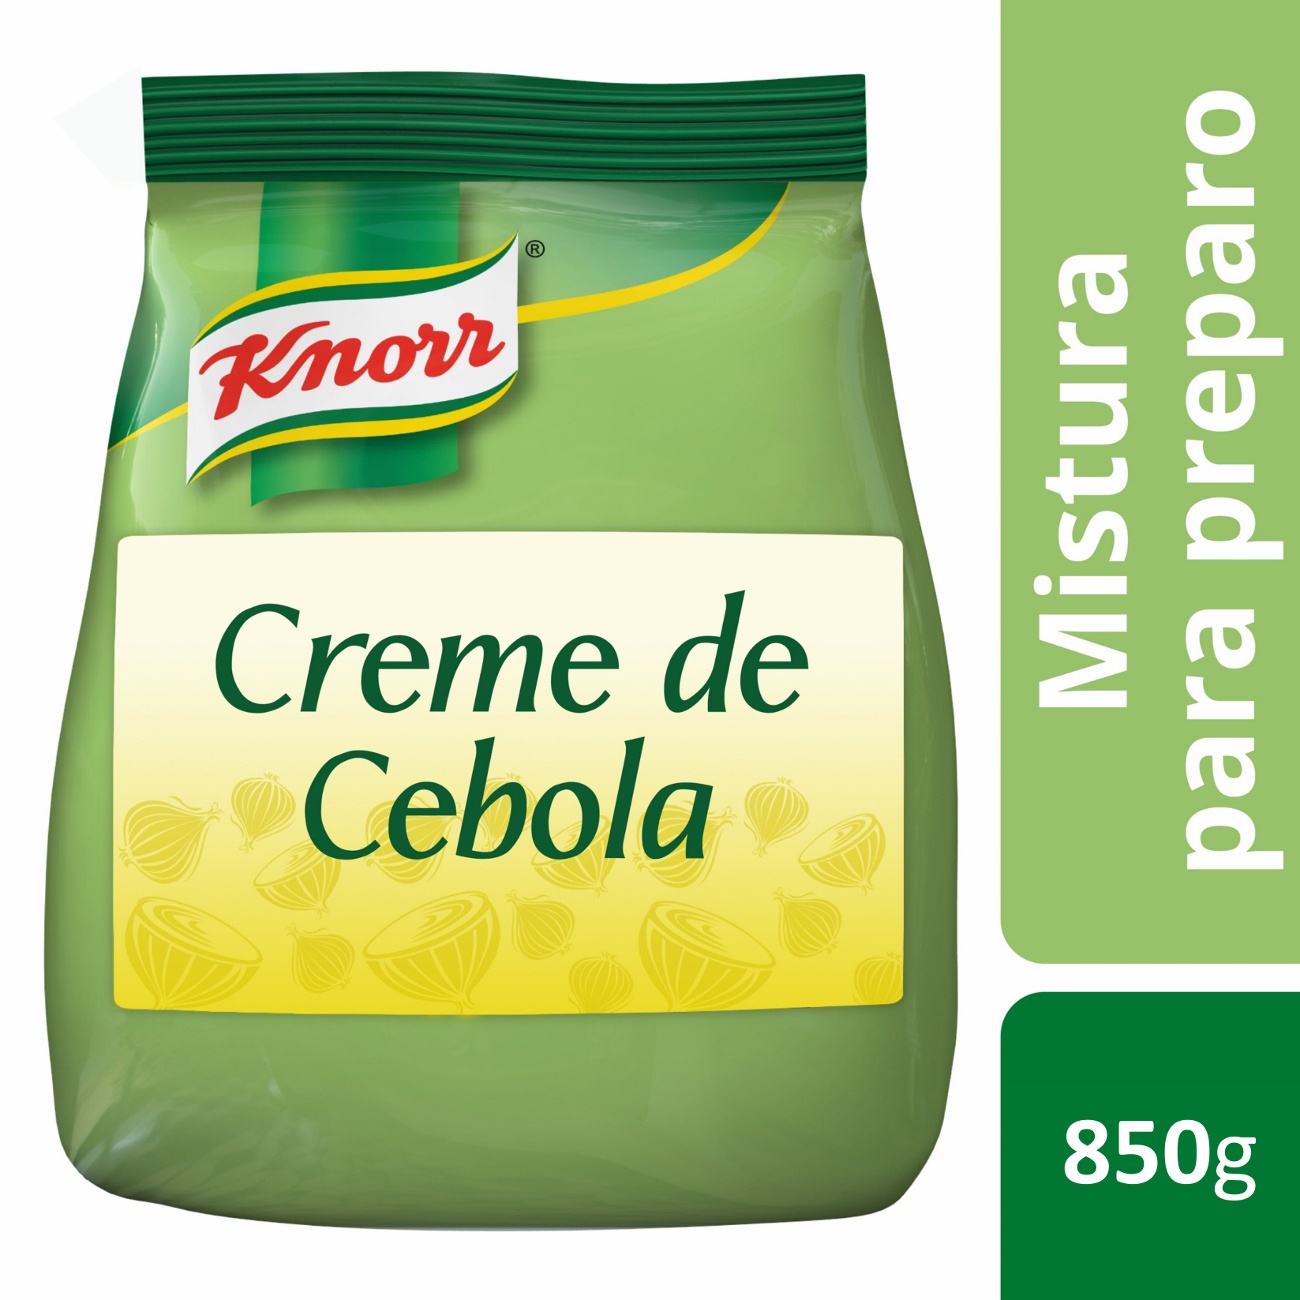 Creme de Cebola Knorr 850g